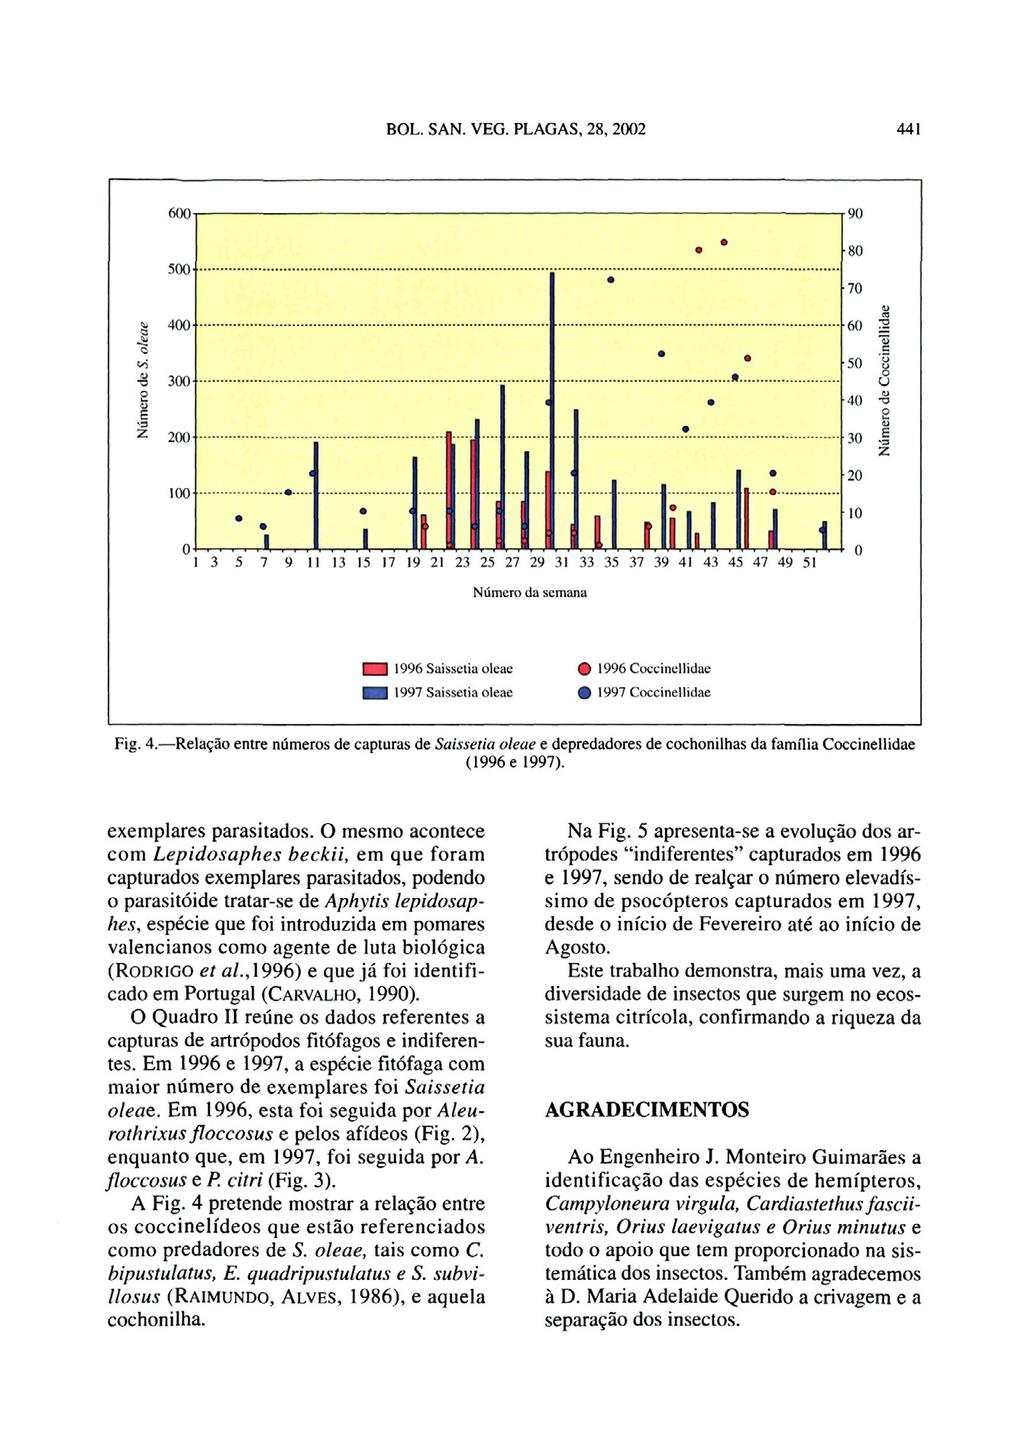 Fig. 4. Relação entre números de capturas de SaLssetia aleae e depredadores de cochonilhas da familia Coccinellidae (1996 e 1997). exemplares parasitados.